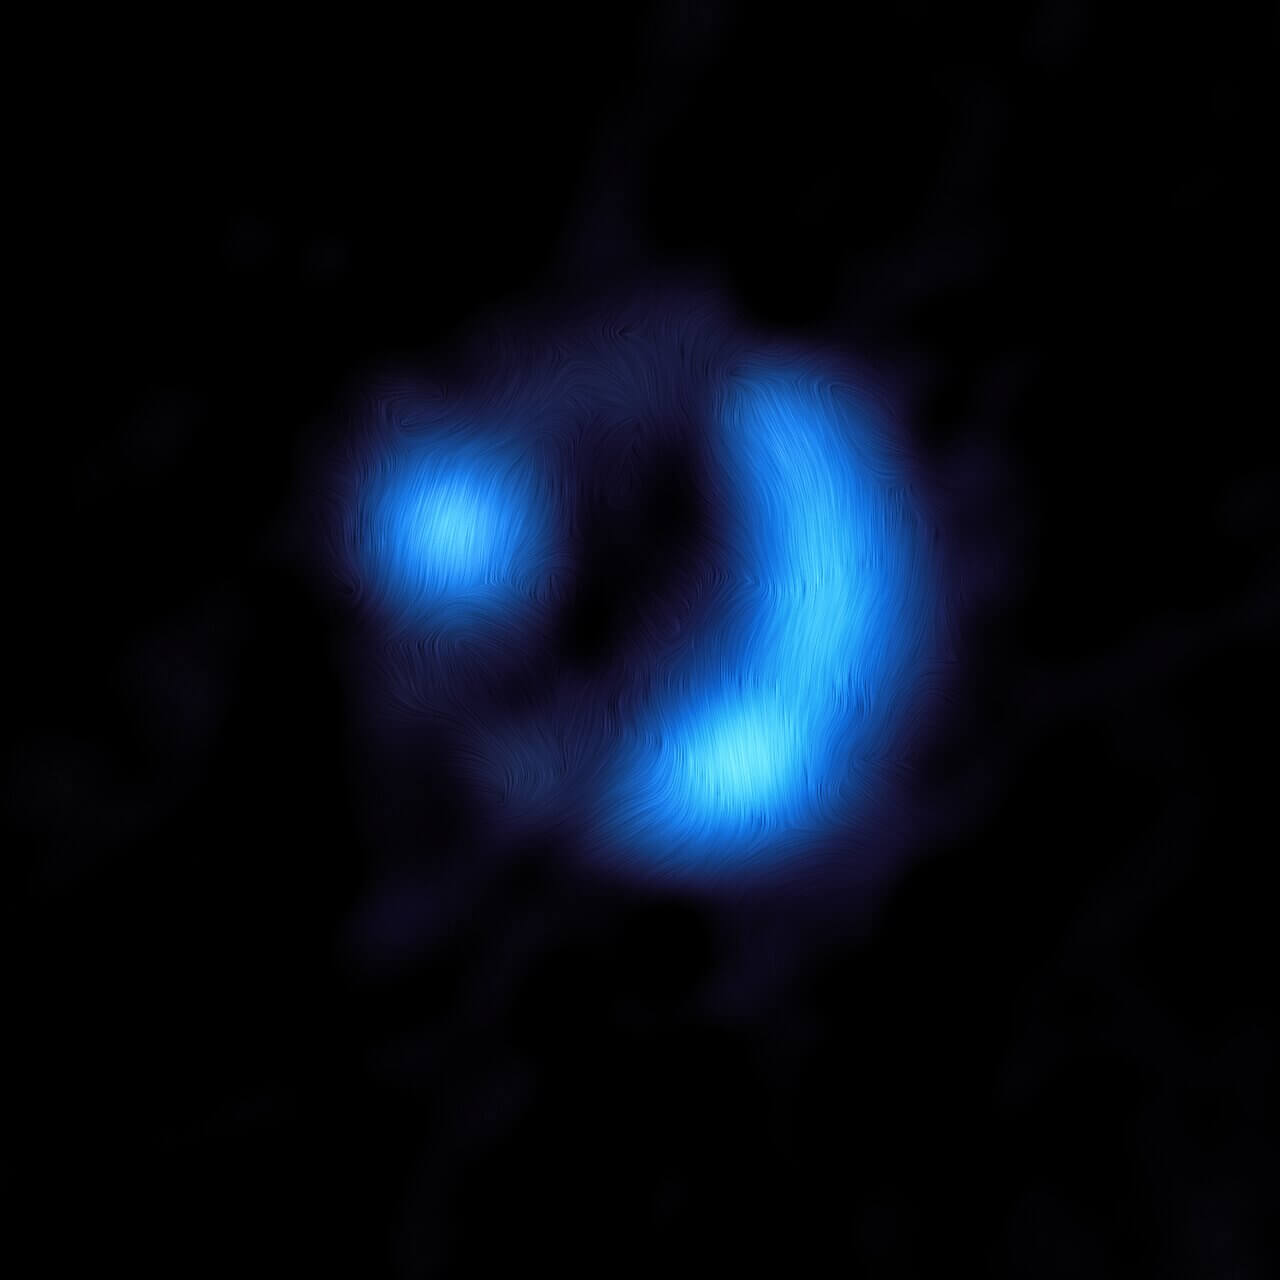 【▲ 図1: 電波で捉えられた9io9の画像に磁気の向きを書き加えたもの。2つに分裂して見えるのは重力レンズ効果による像の歪みのため。 (Image Credit: ALMA (ESO, NAOJ, NRAO) , J. Geach et al.) 】